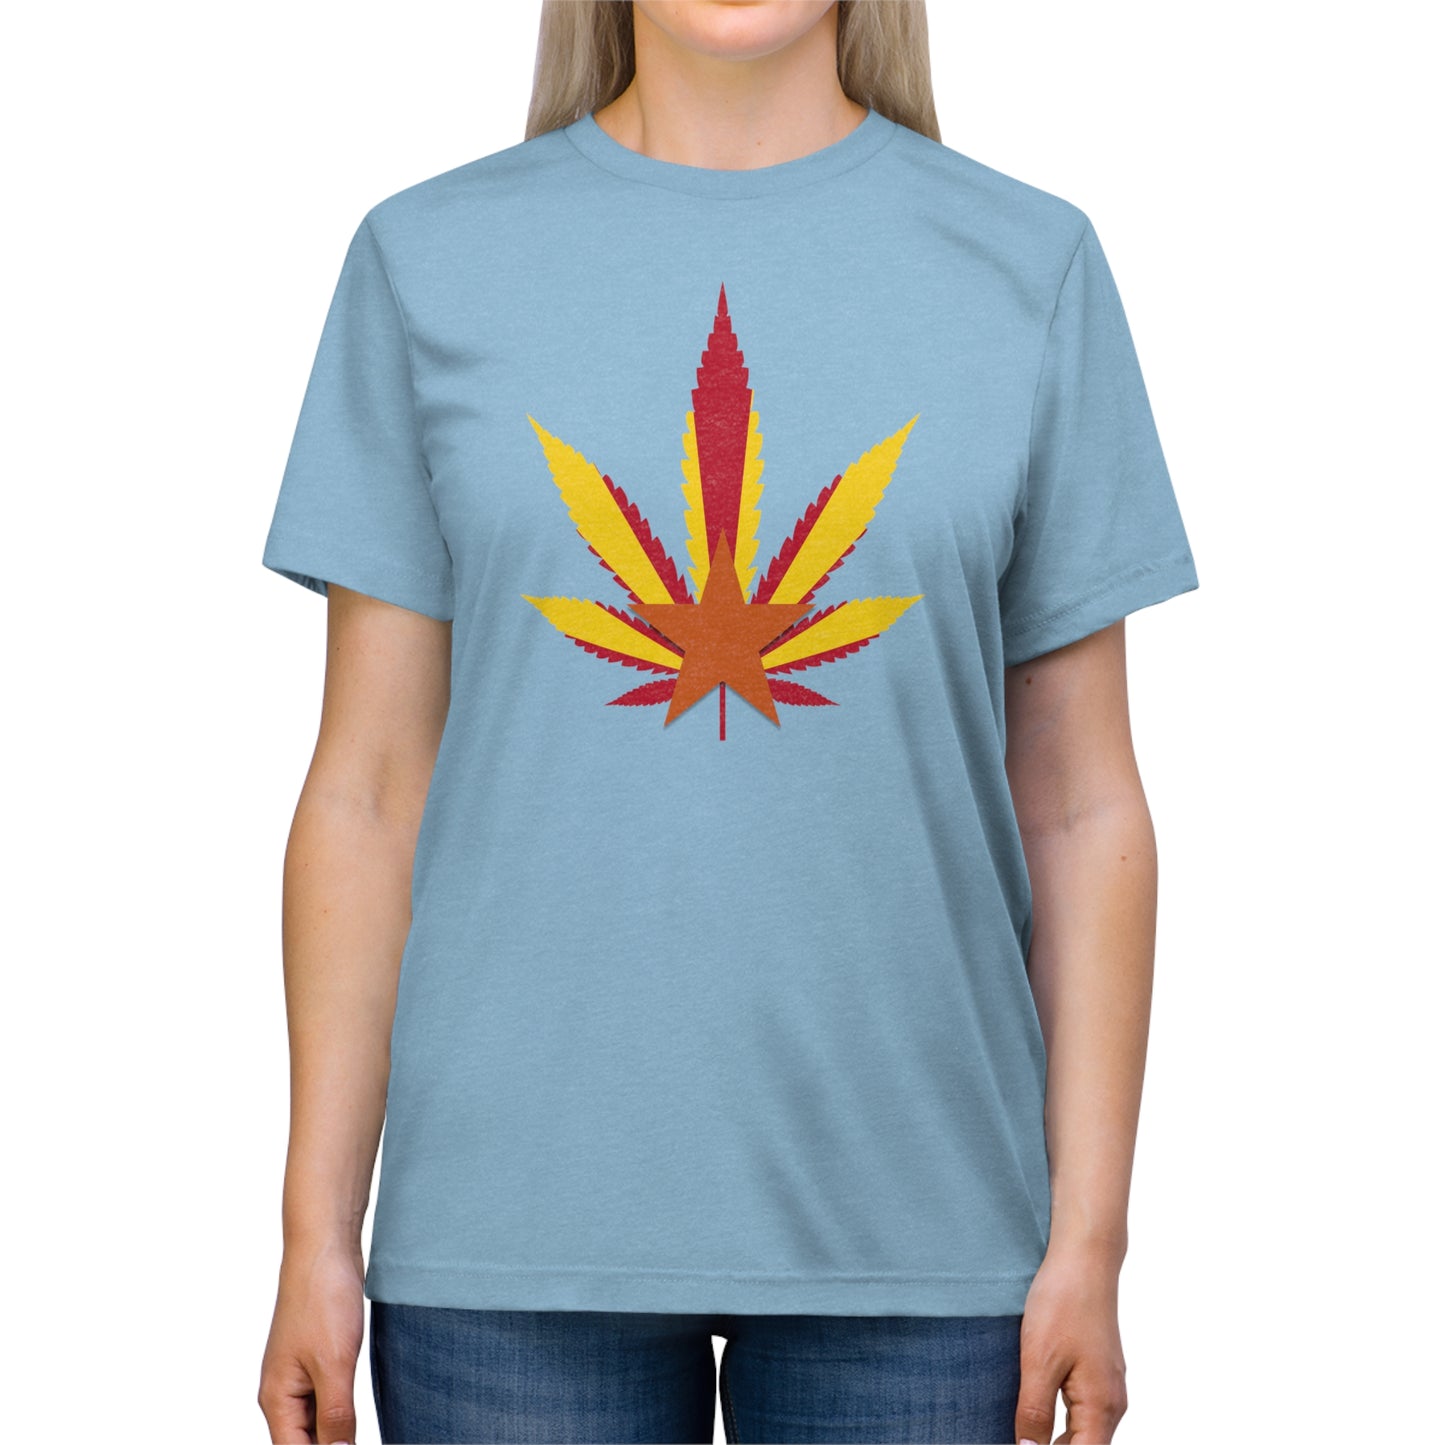 Arizona Cannabis Flag Leaf - Unisex Triblend Tee